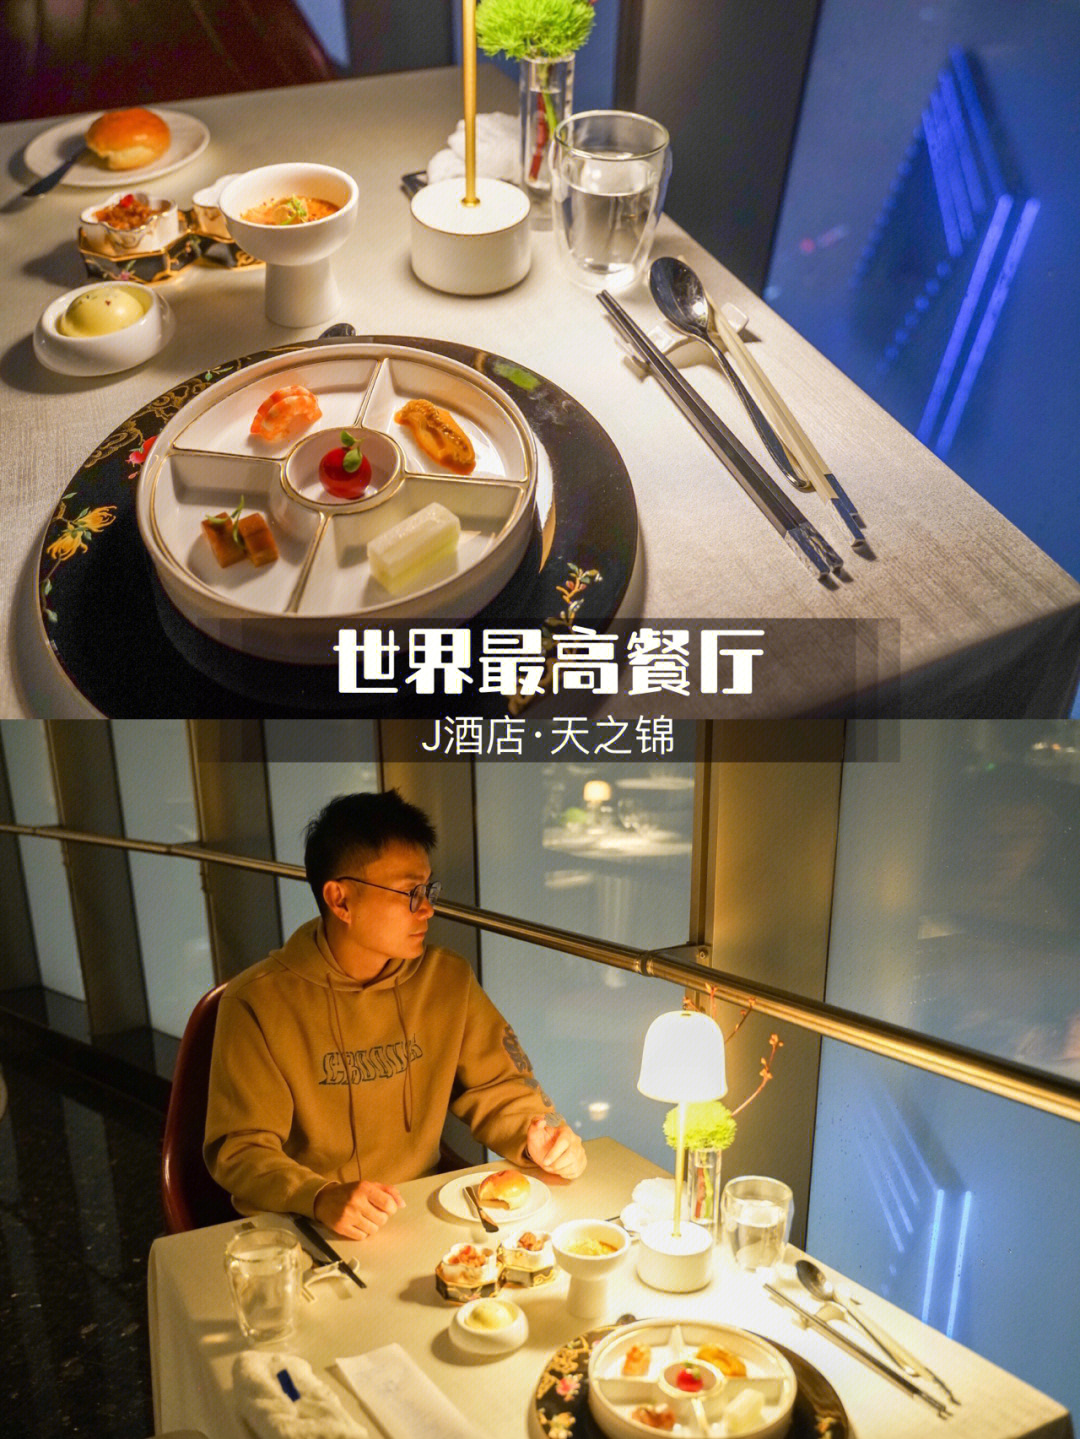 上海中心天之锦餐厅图片